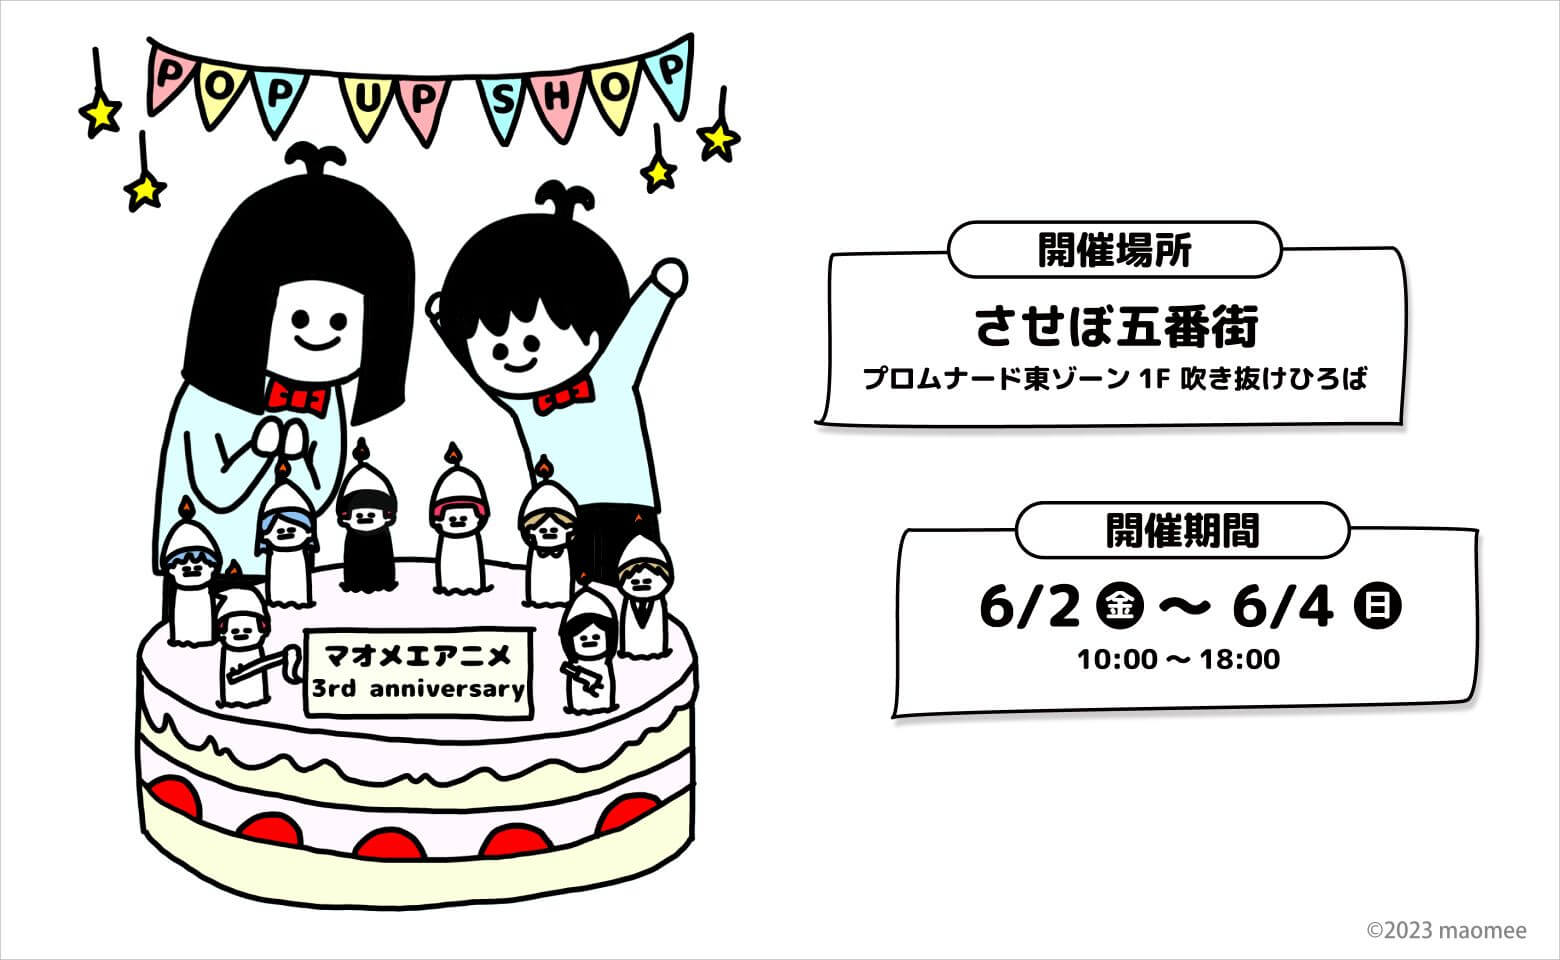 マオメエアニメ 3rd anniversary POP UP SHOP in させぼ五番街